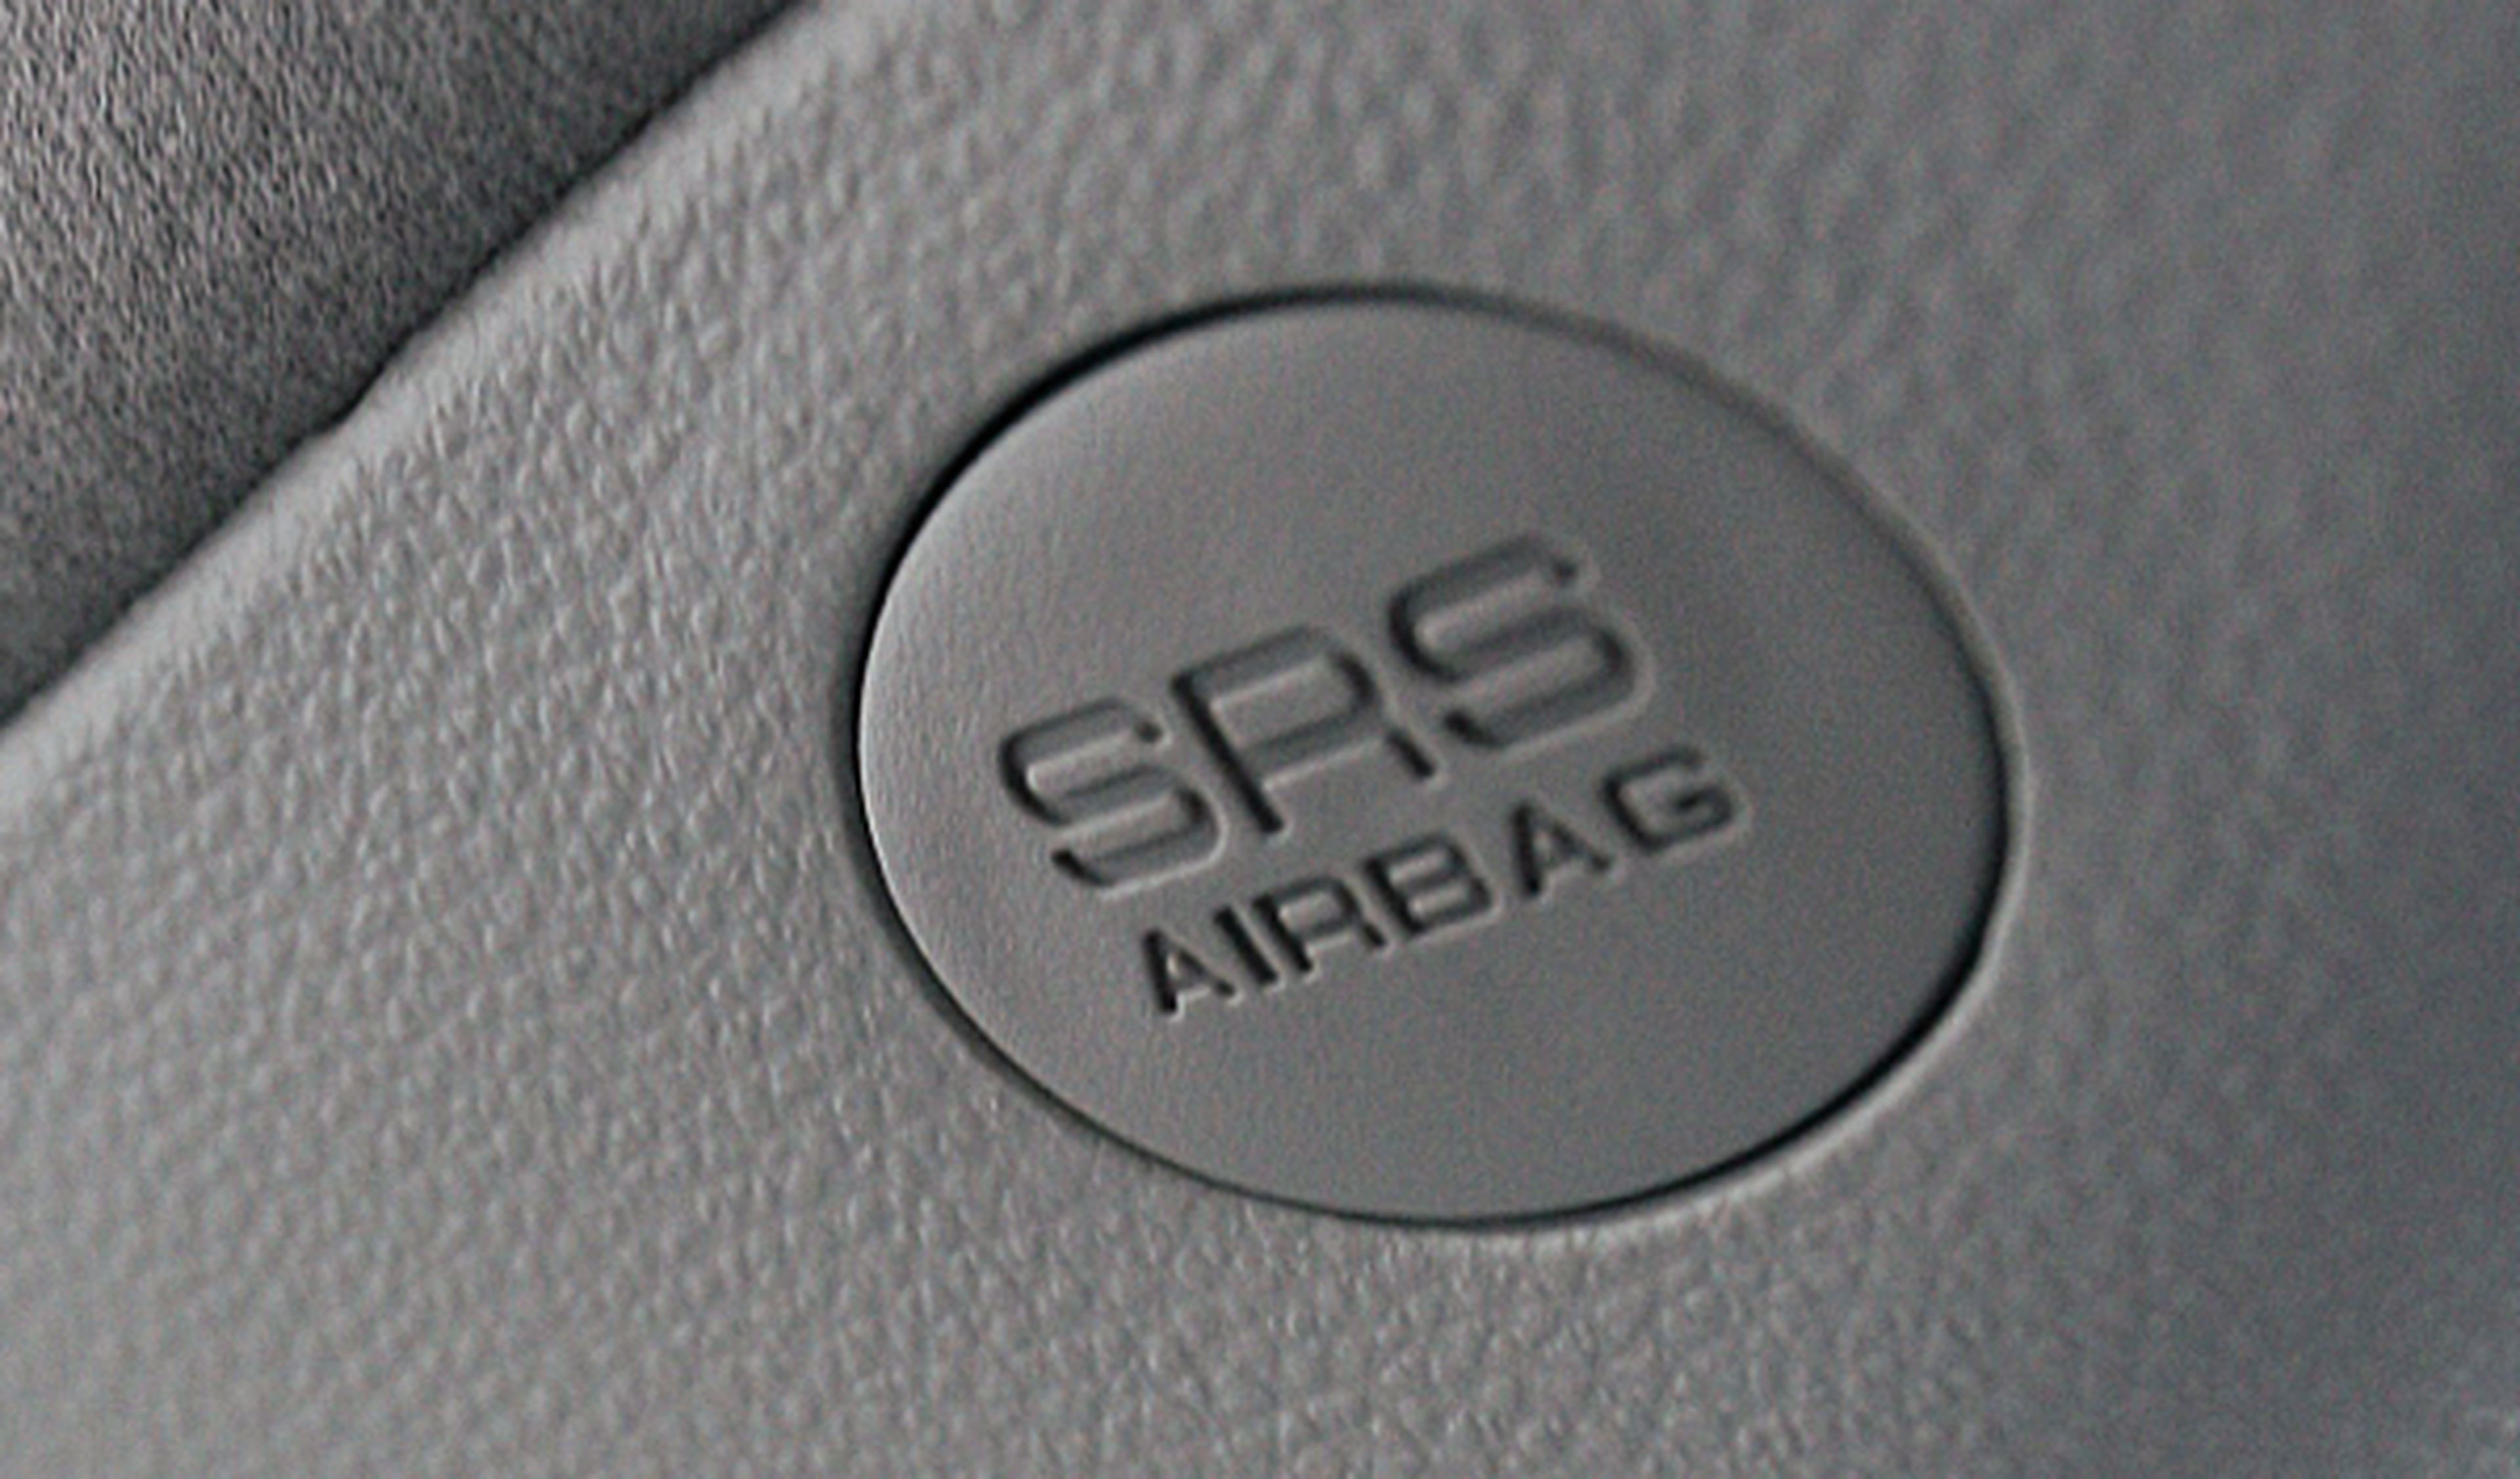 Honda llama a revisión a 400.000 coches por un problema con el airbag